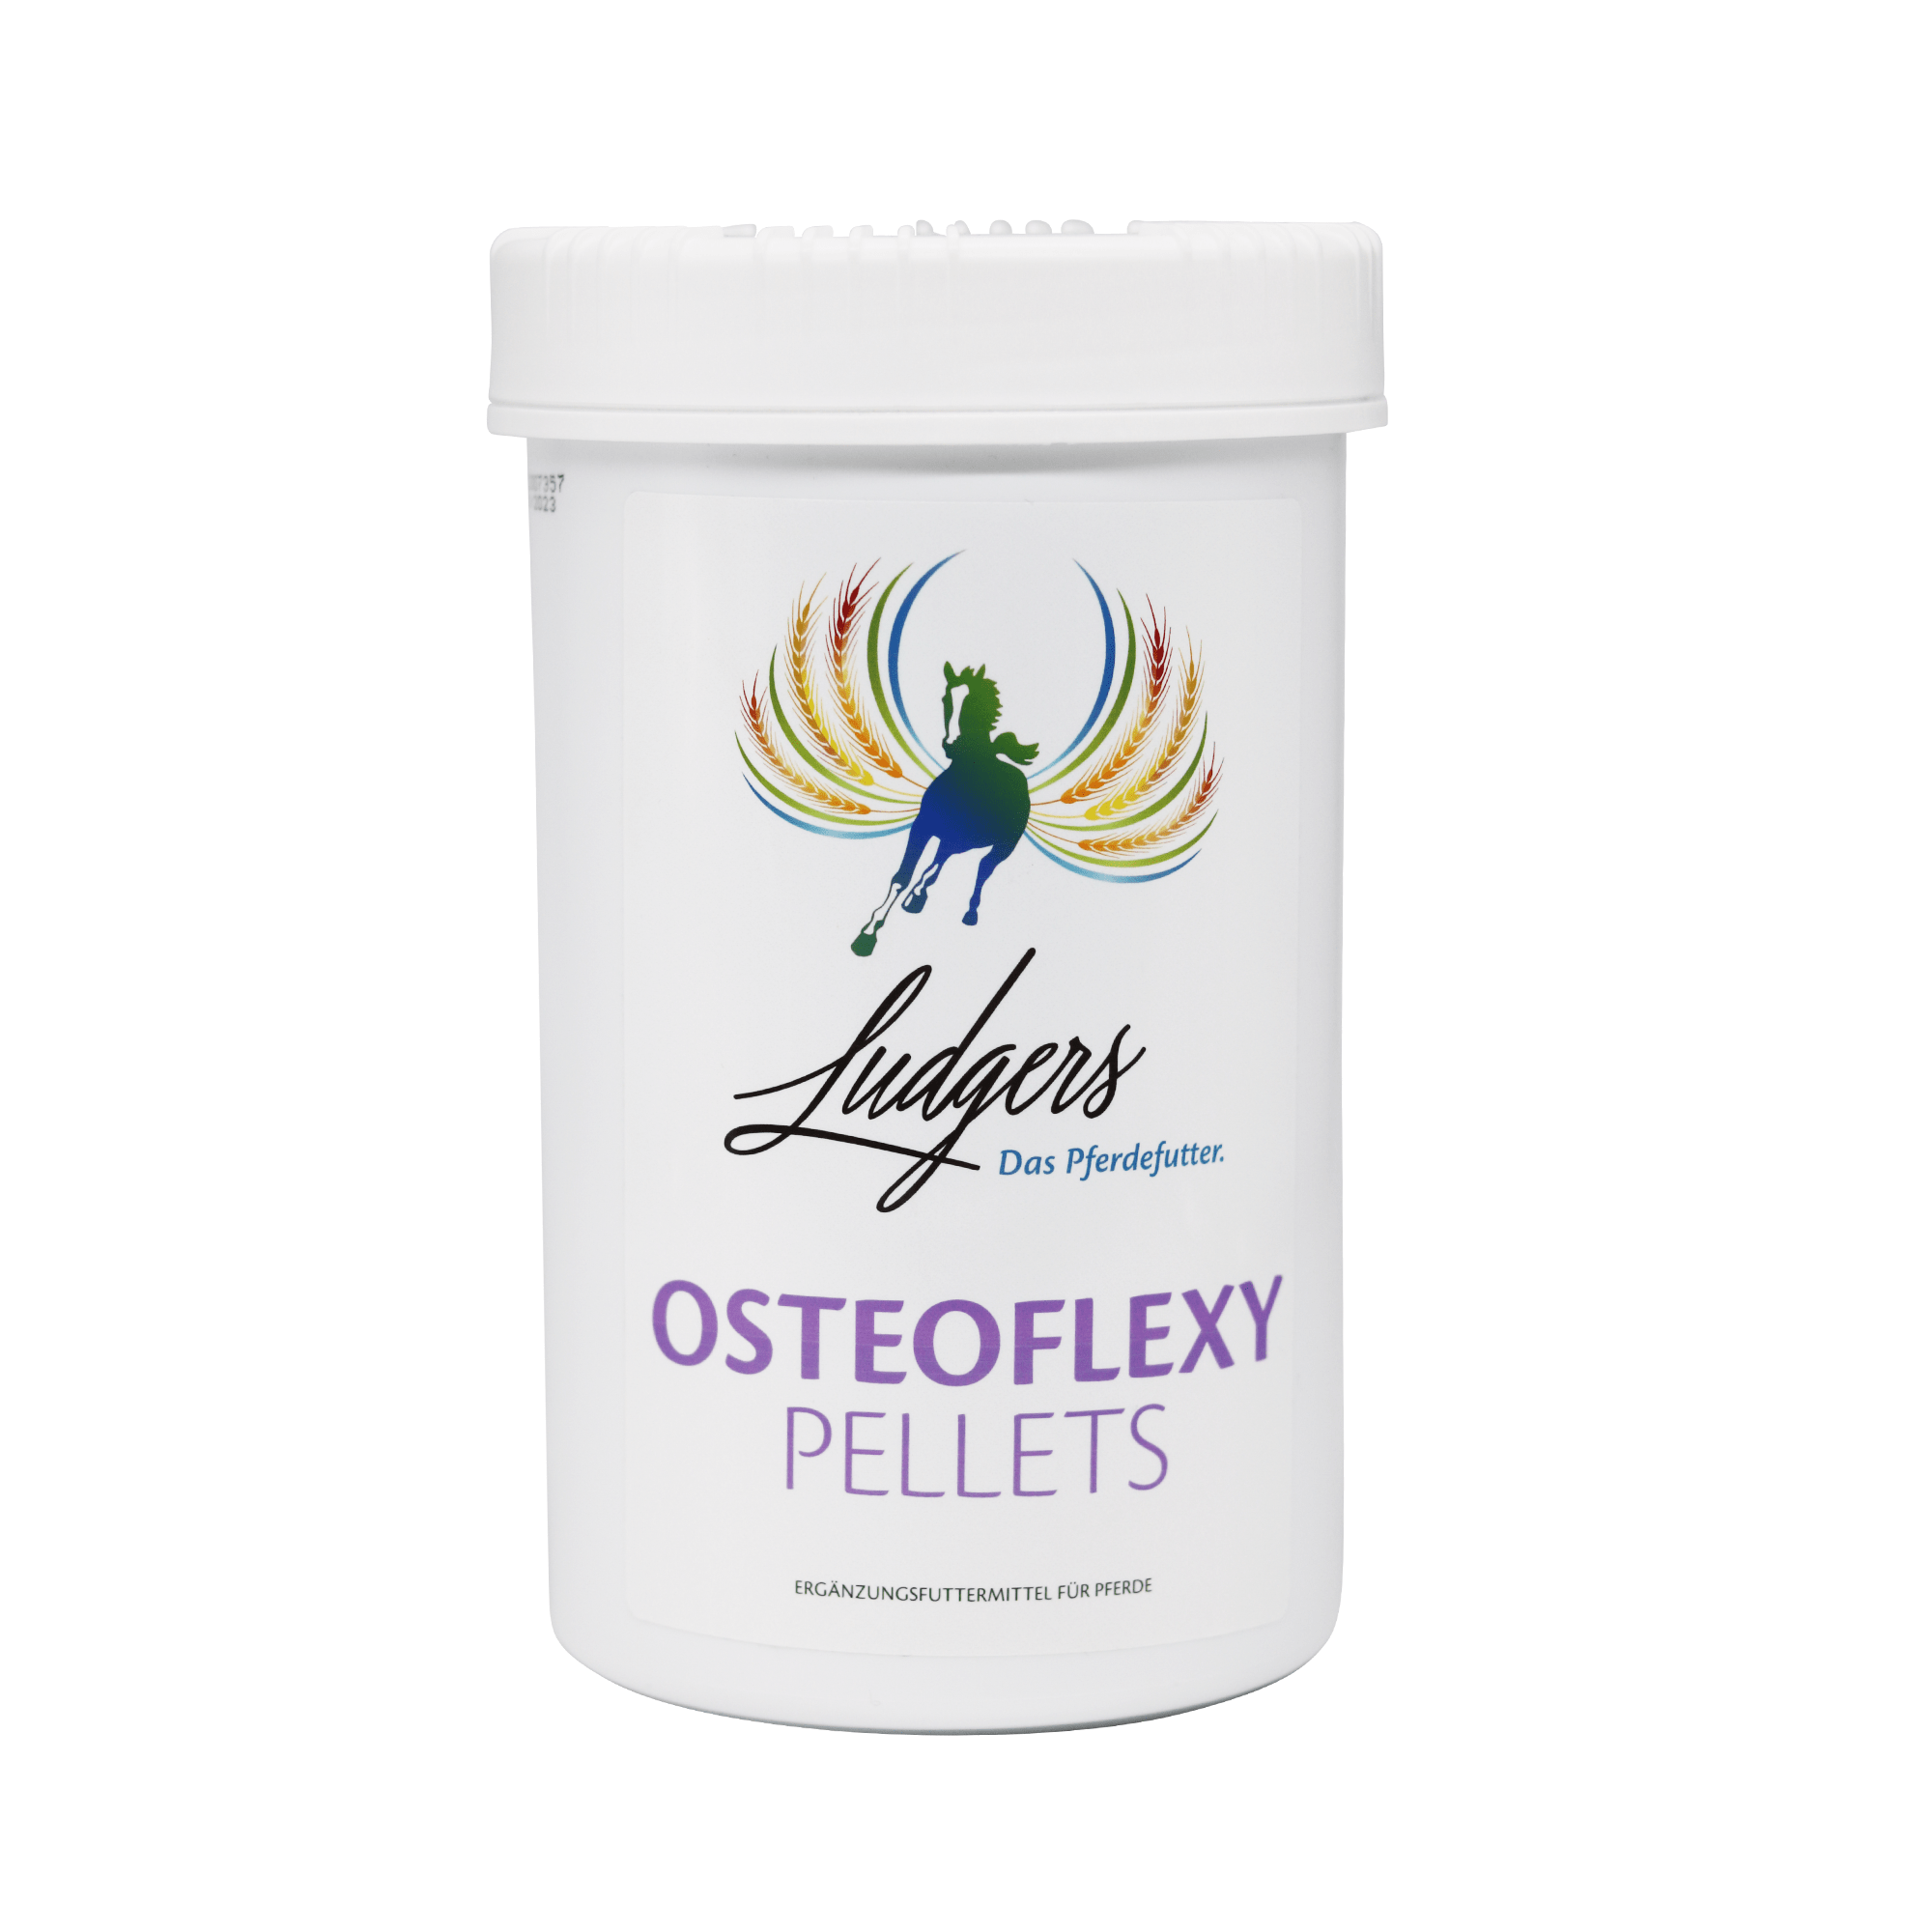 OSTEOFLEXY | PELLETS